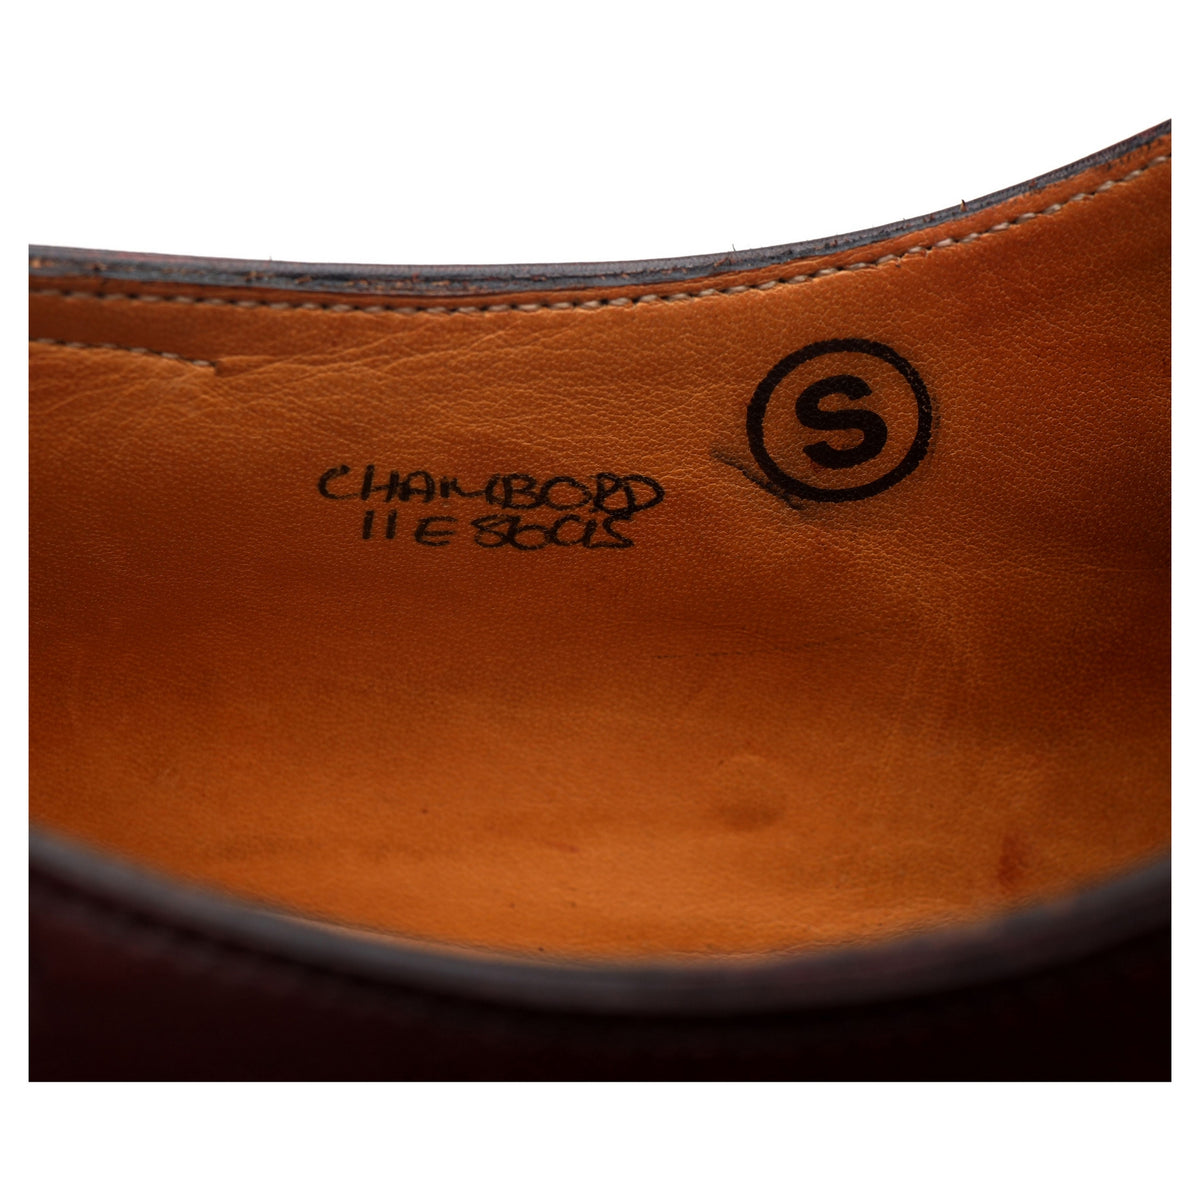 &#39;Chambord&#39; Burgundy Leather Split Toe Derby UK 11 E